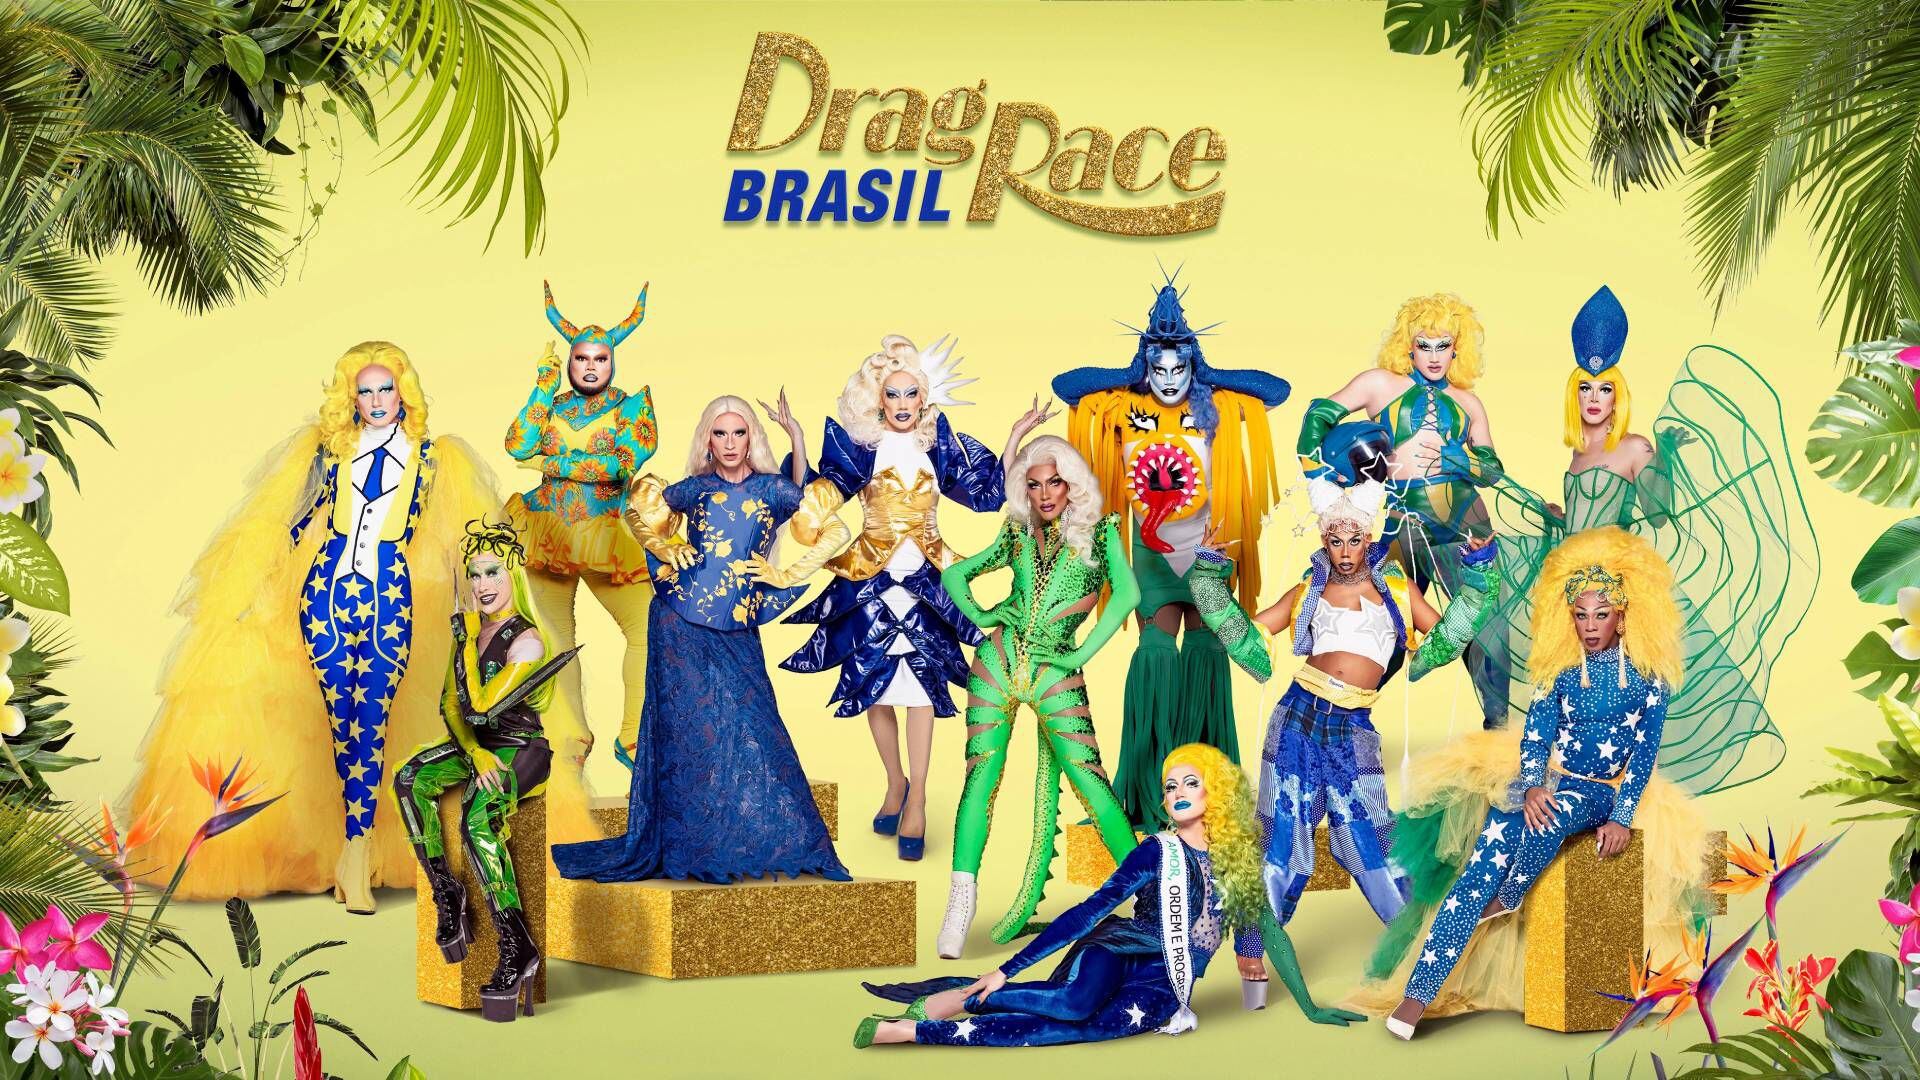 Participantes de Drag Race Brasil, por Paramount+